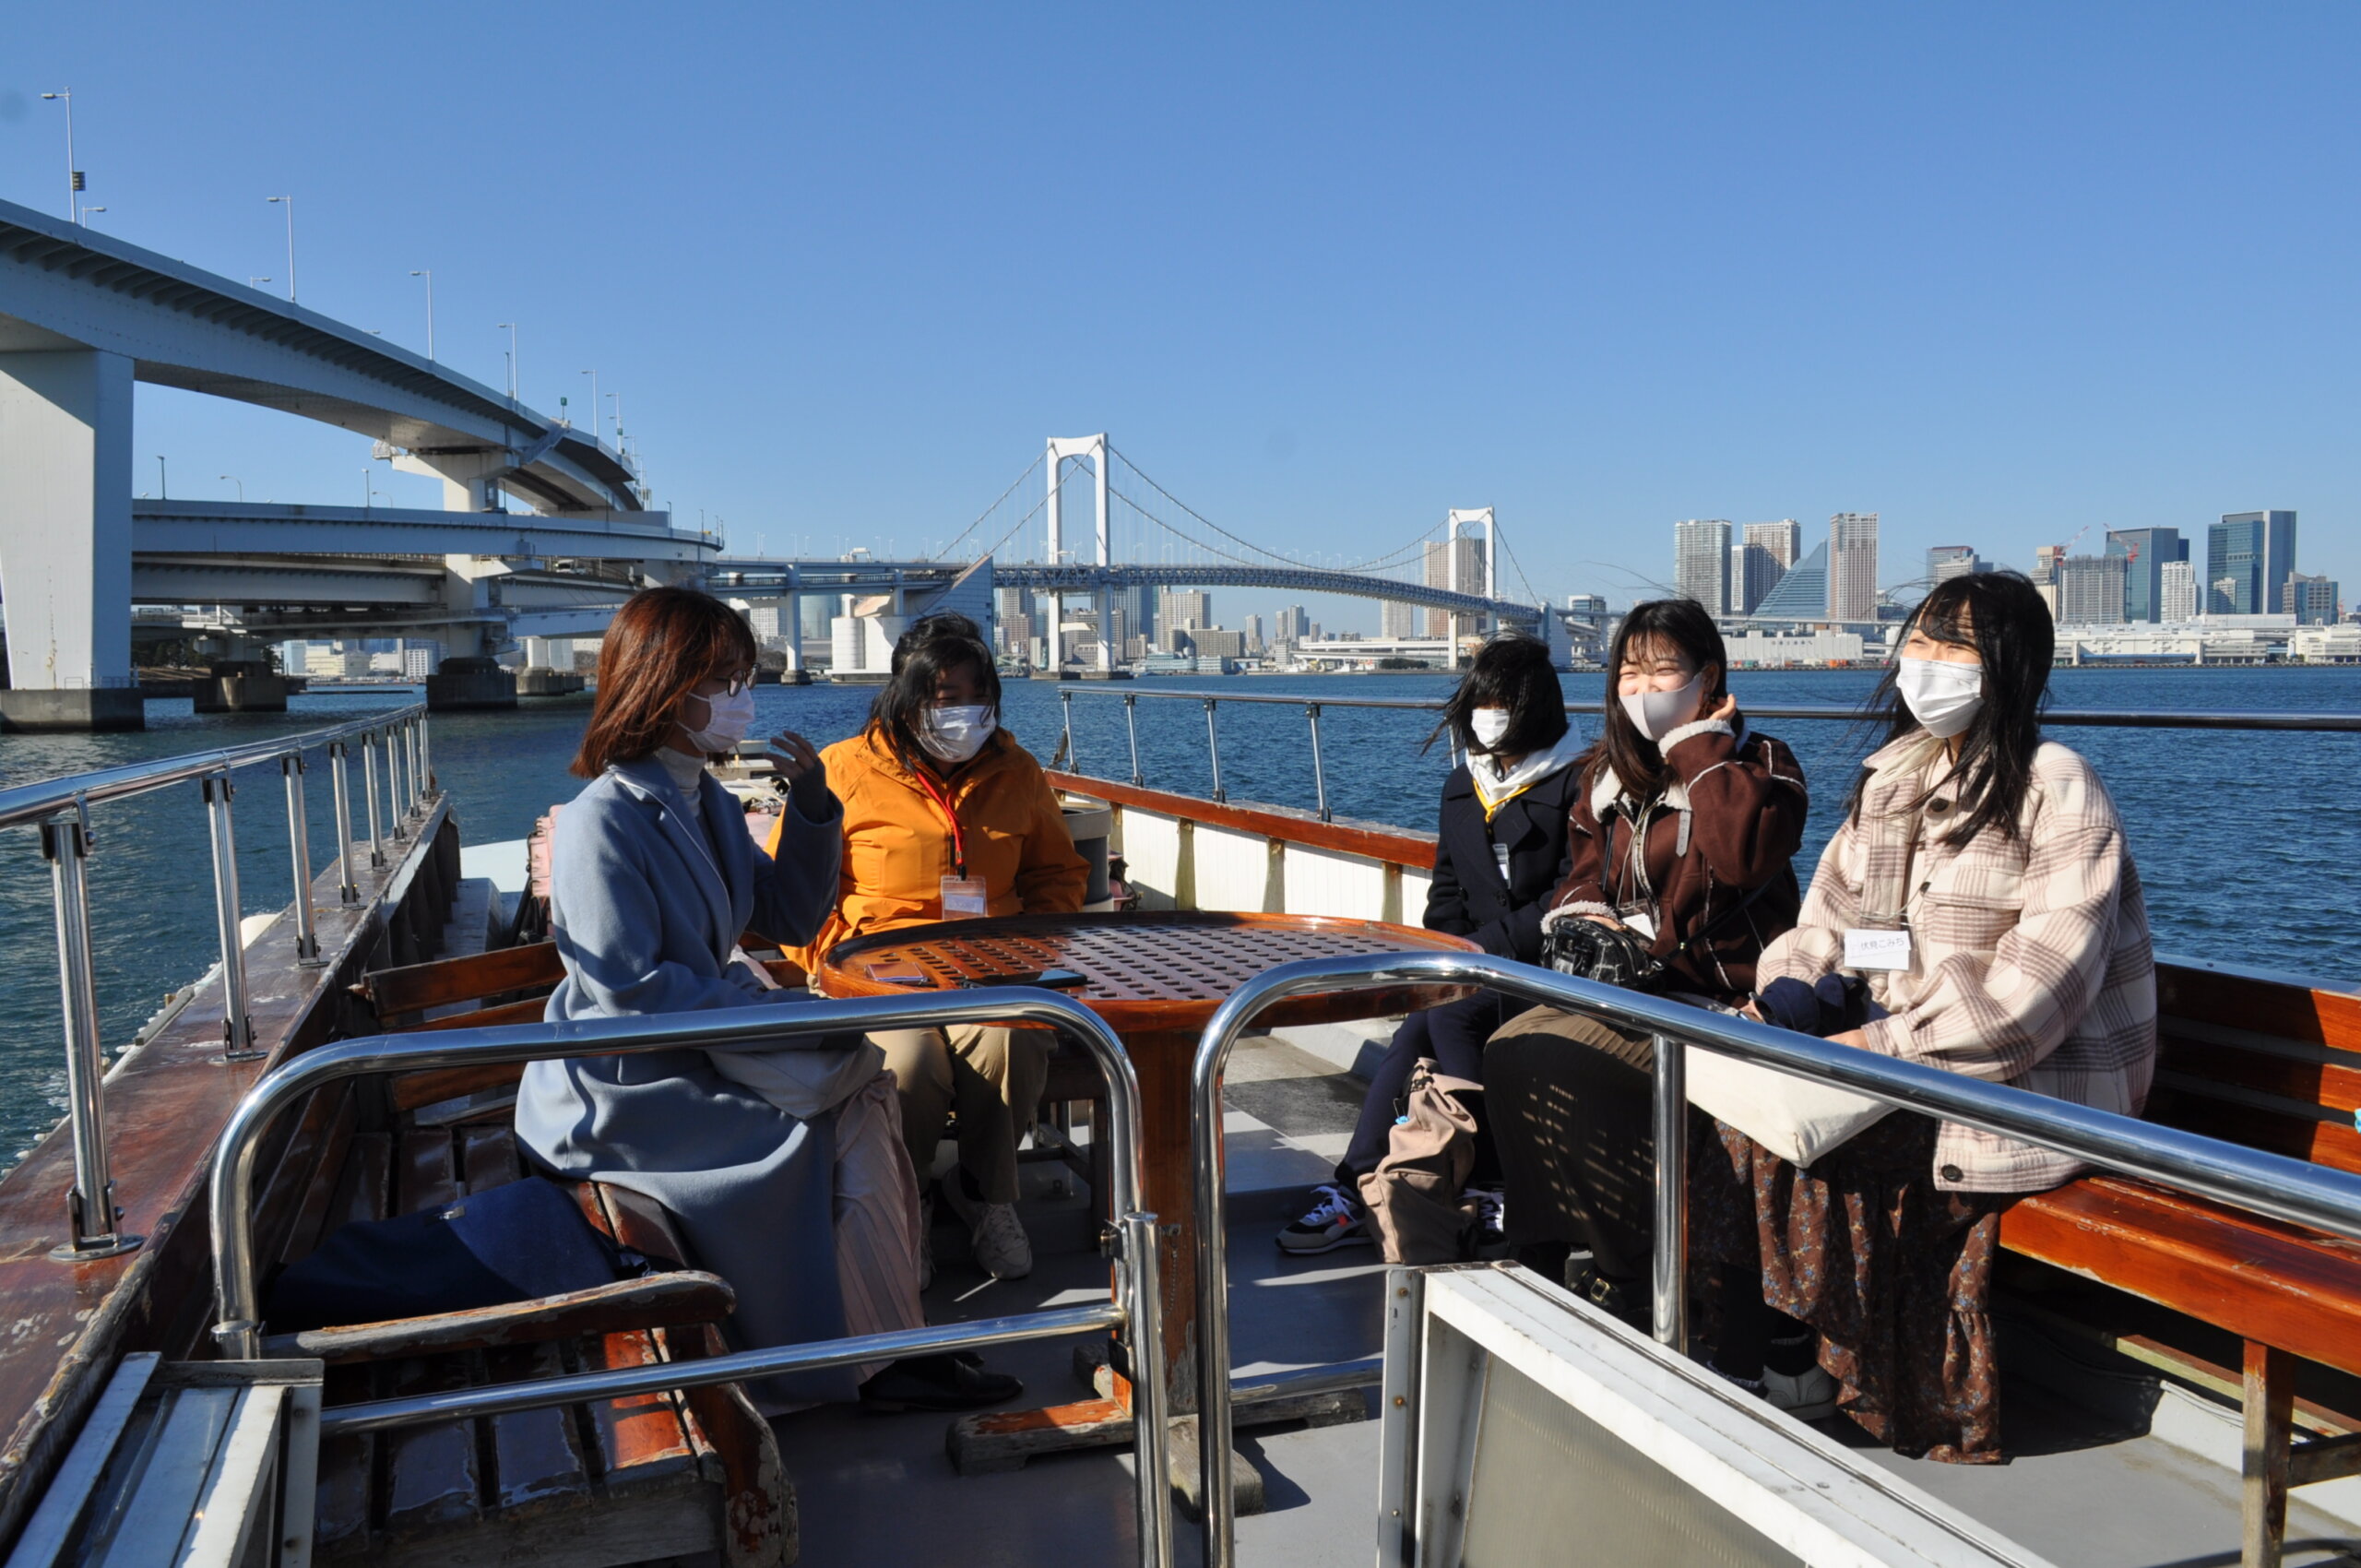 クルーズ船で東京探訪!! 「東京の森川海を知る」